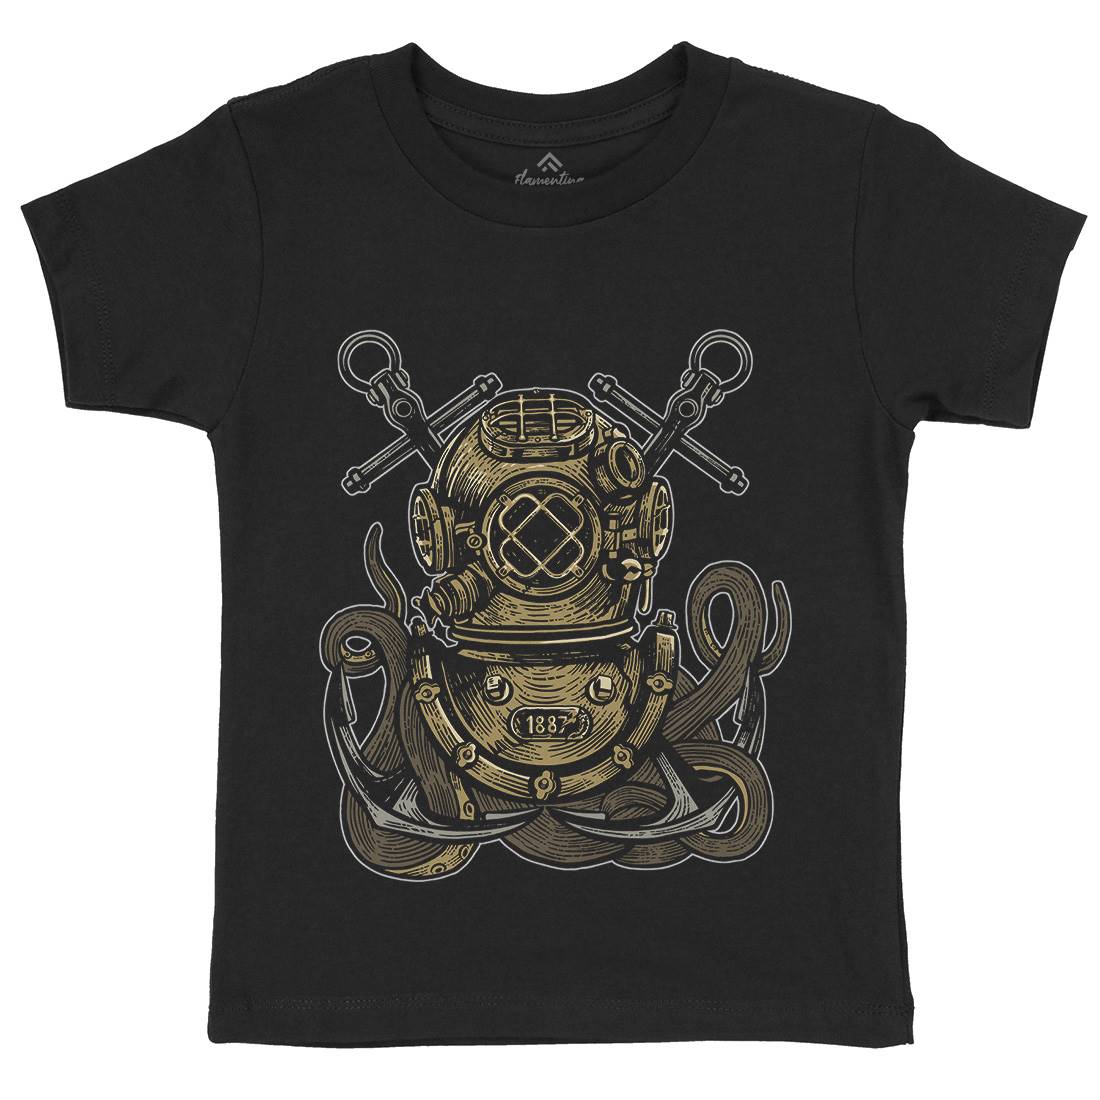 Diver Octopus Kids Crew Neck T-Shirt Navy A524